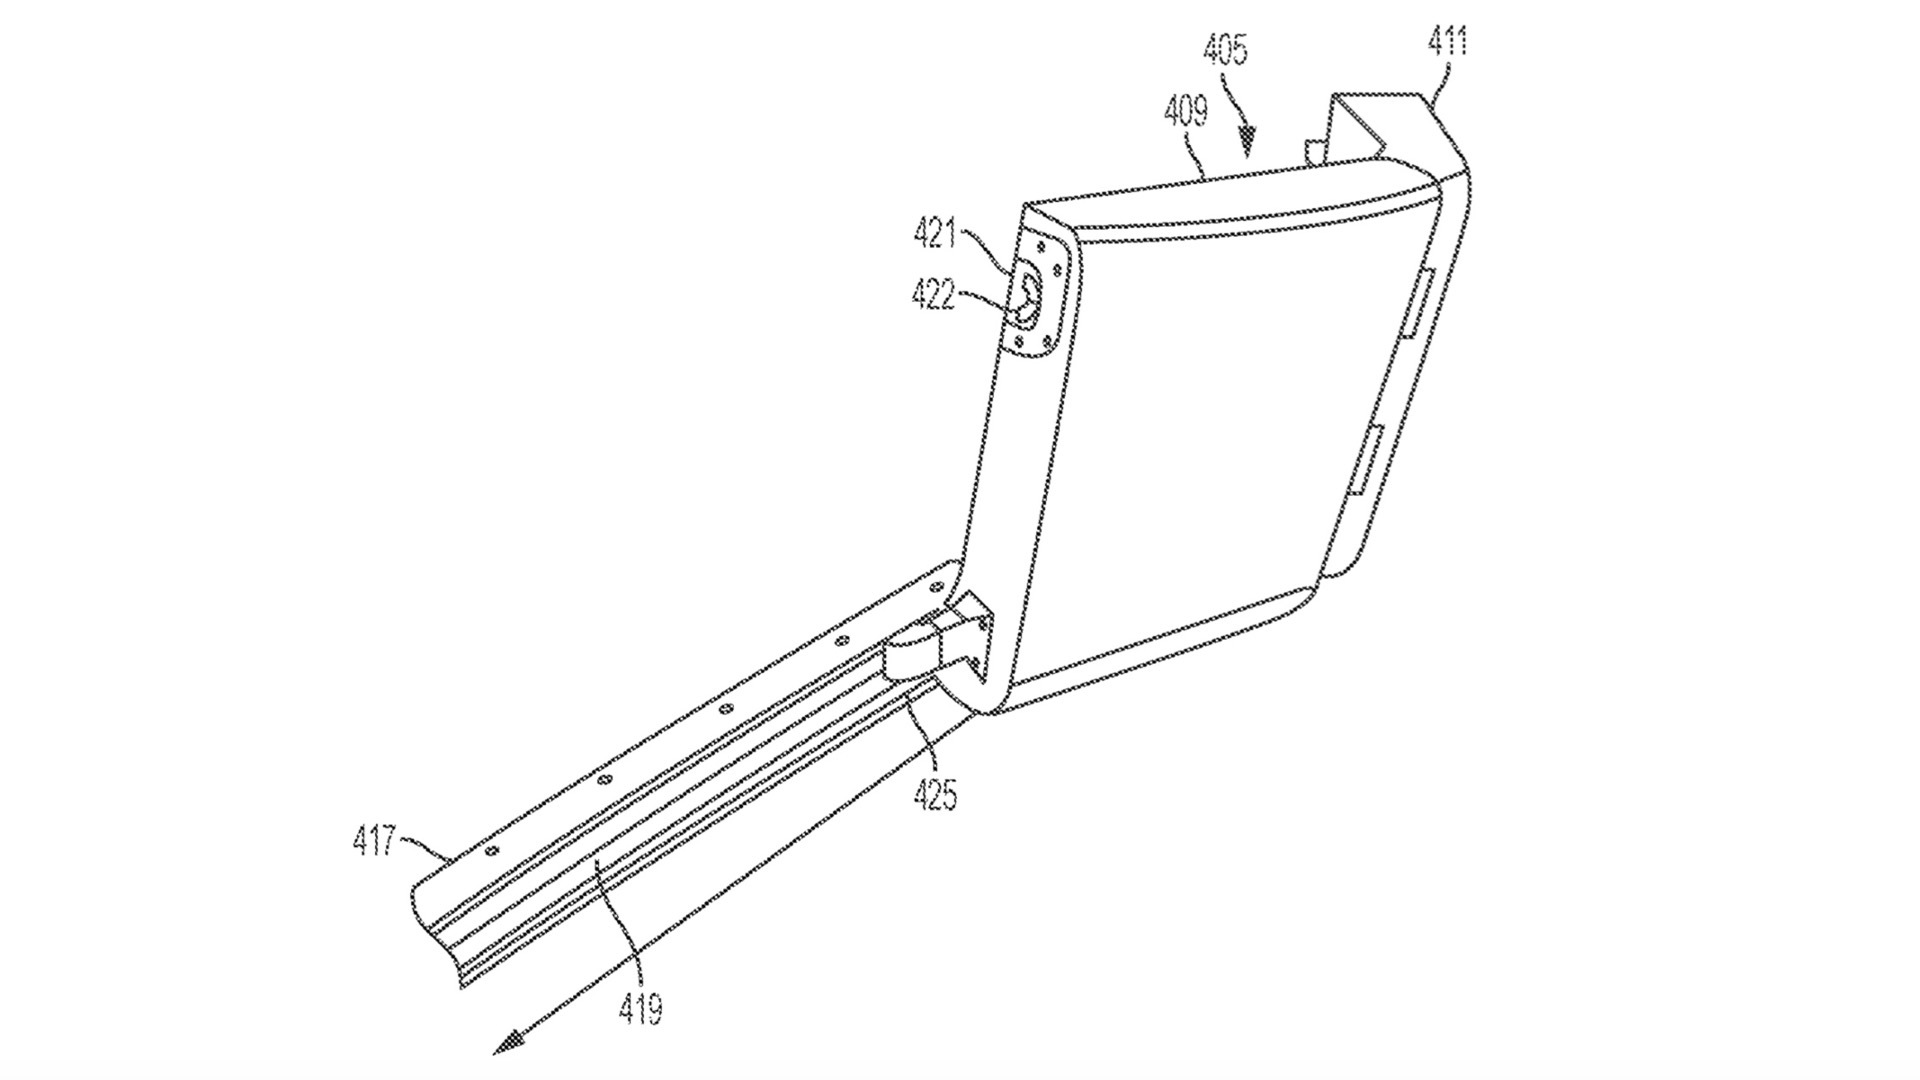 Rivian folding tailgate patent image